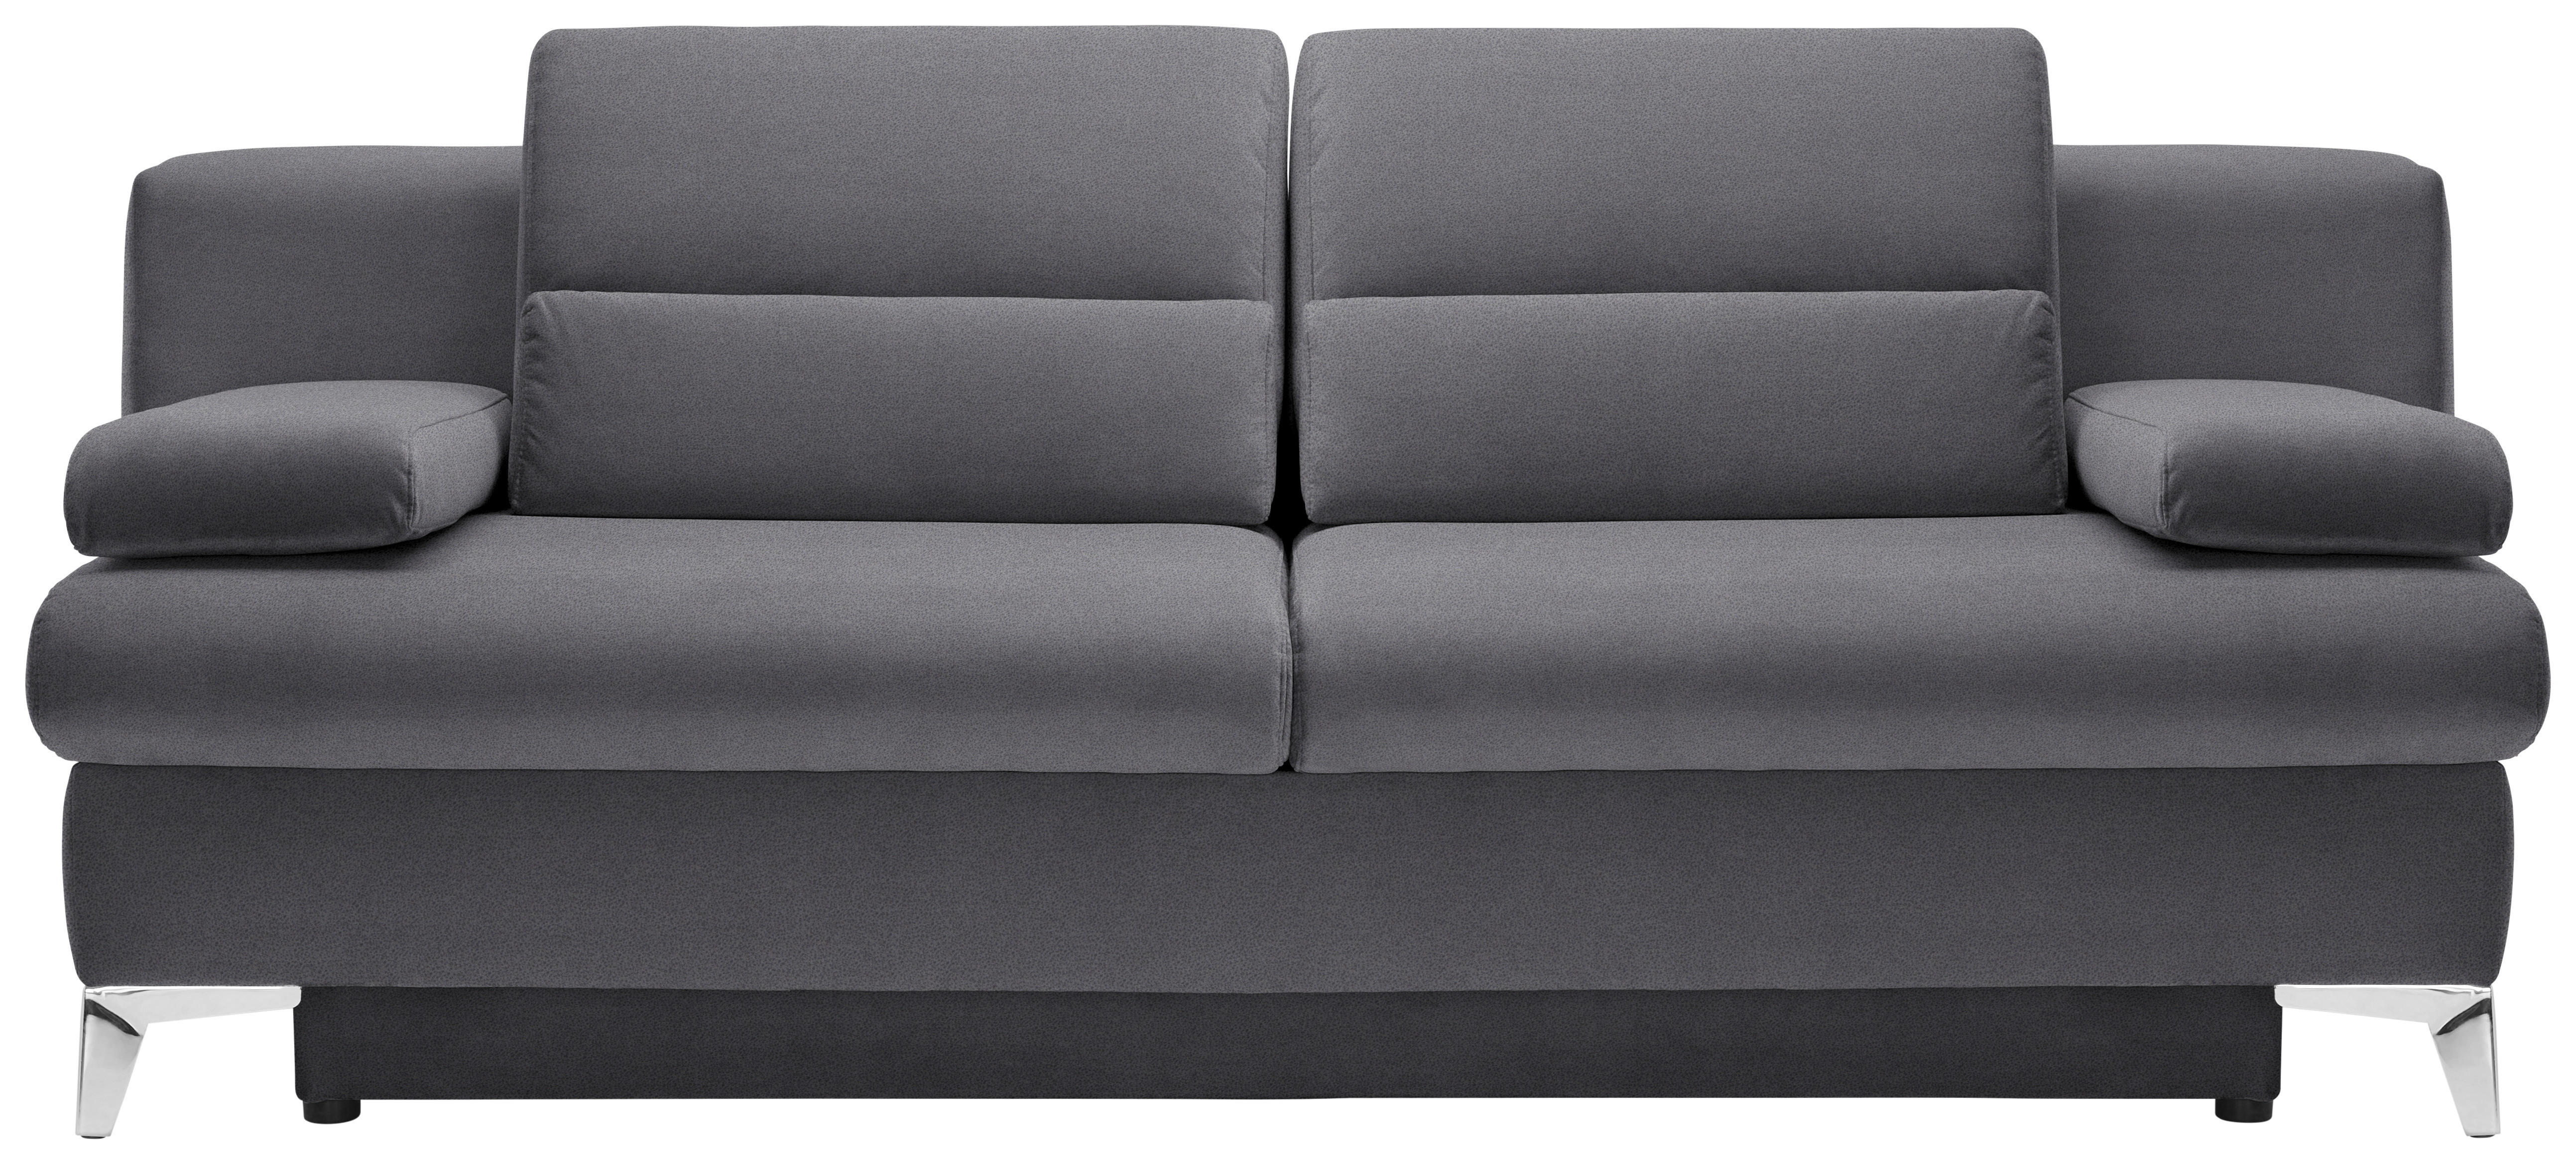 SCHLAFSOFA Flachgewebe Grau  - Grau, Design, Textil/Metall (206-267/91/110cm) - Venda